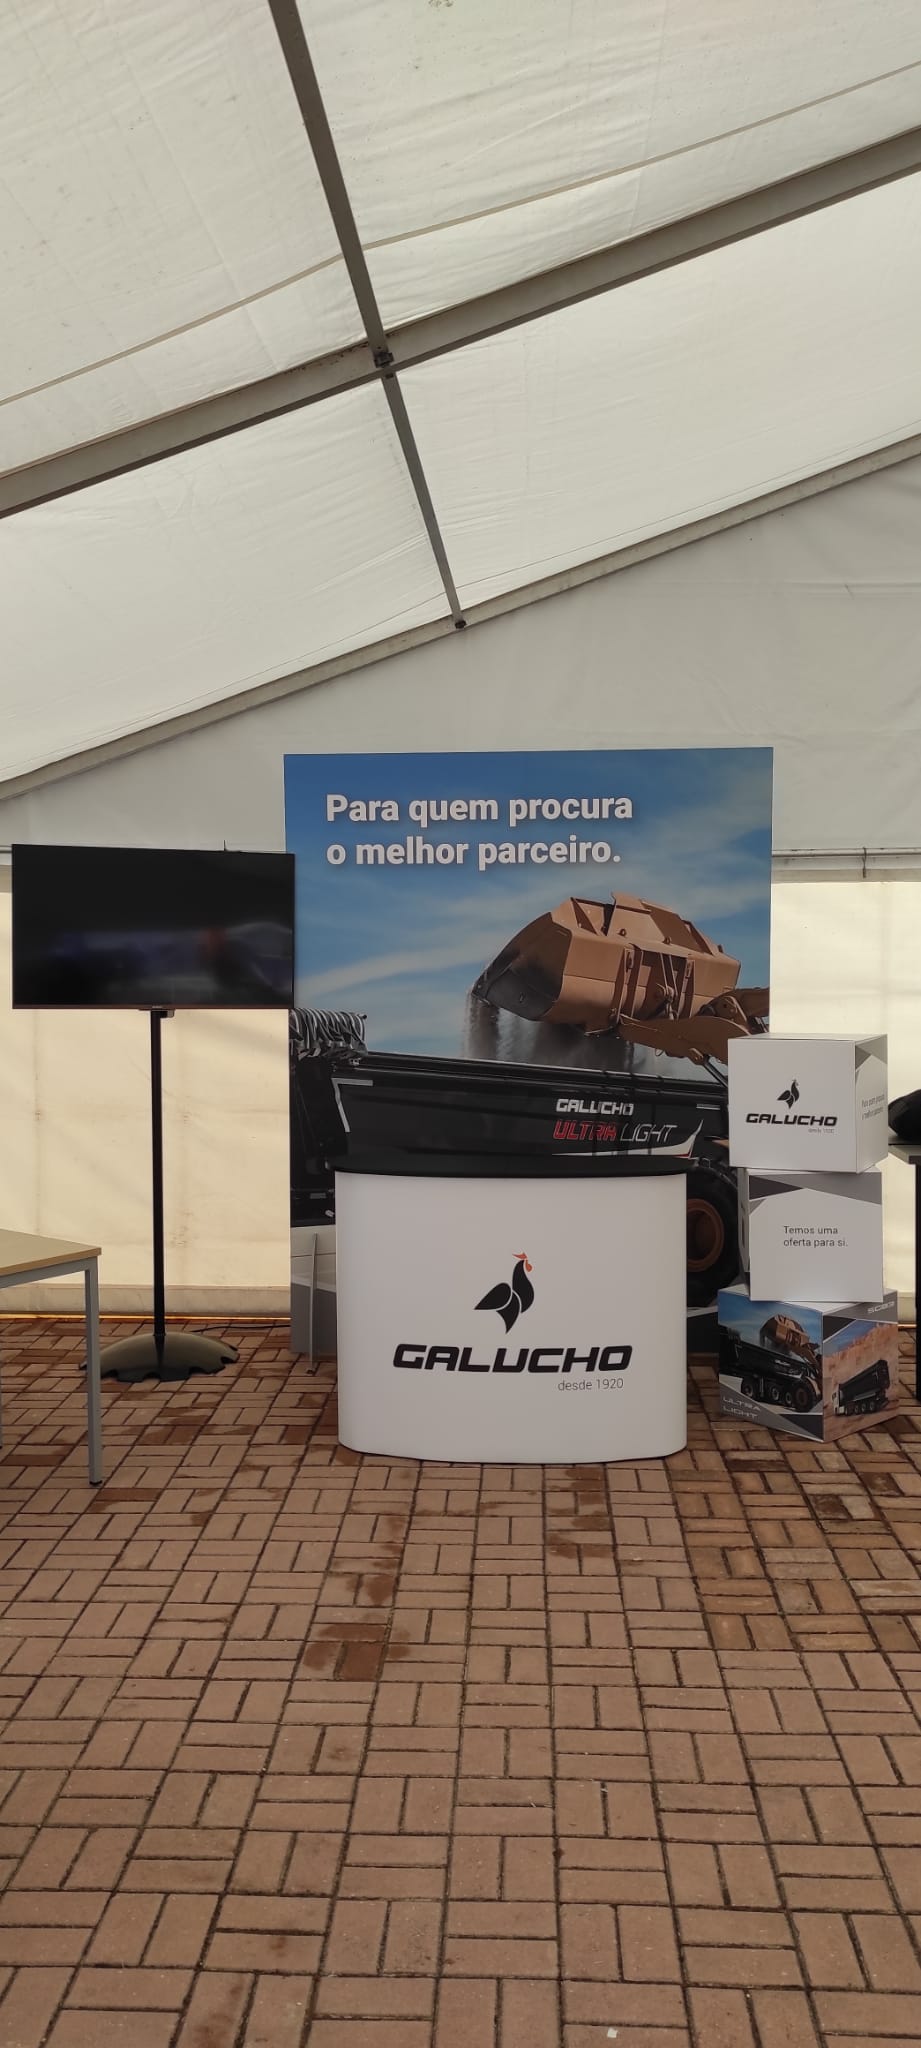 Galucho était présent à l'événement organisé par Ford Trucks